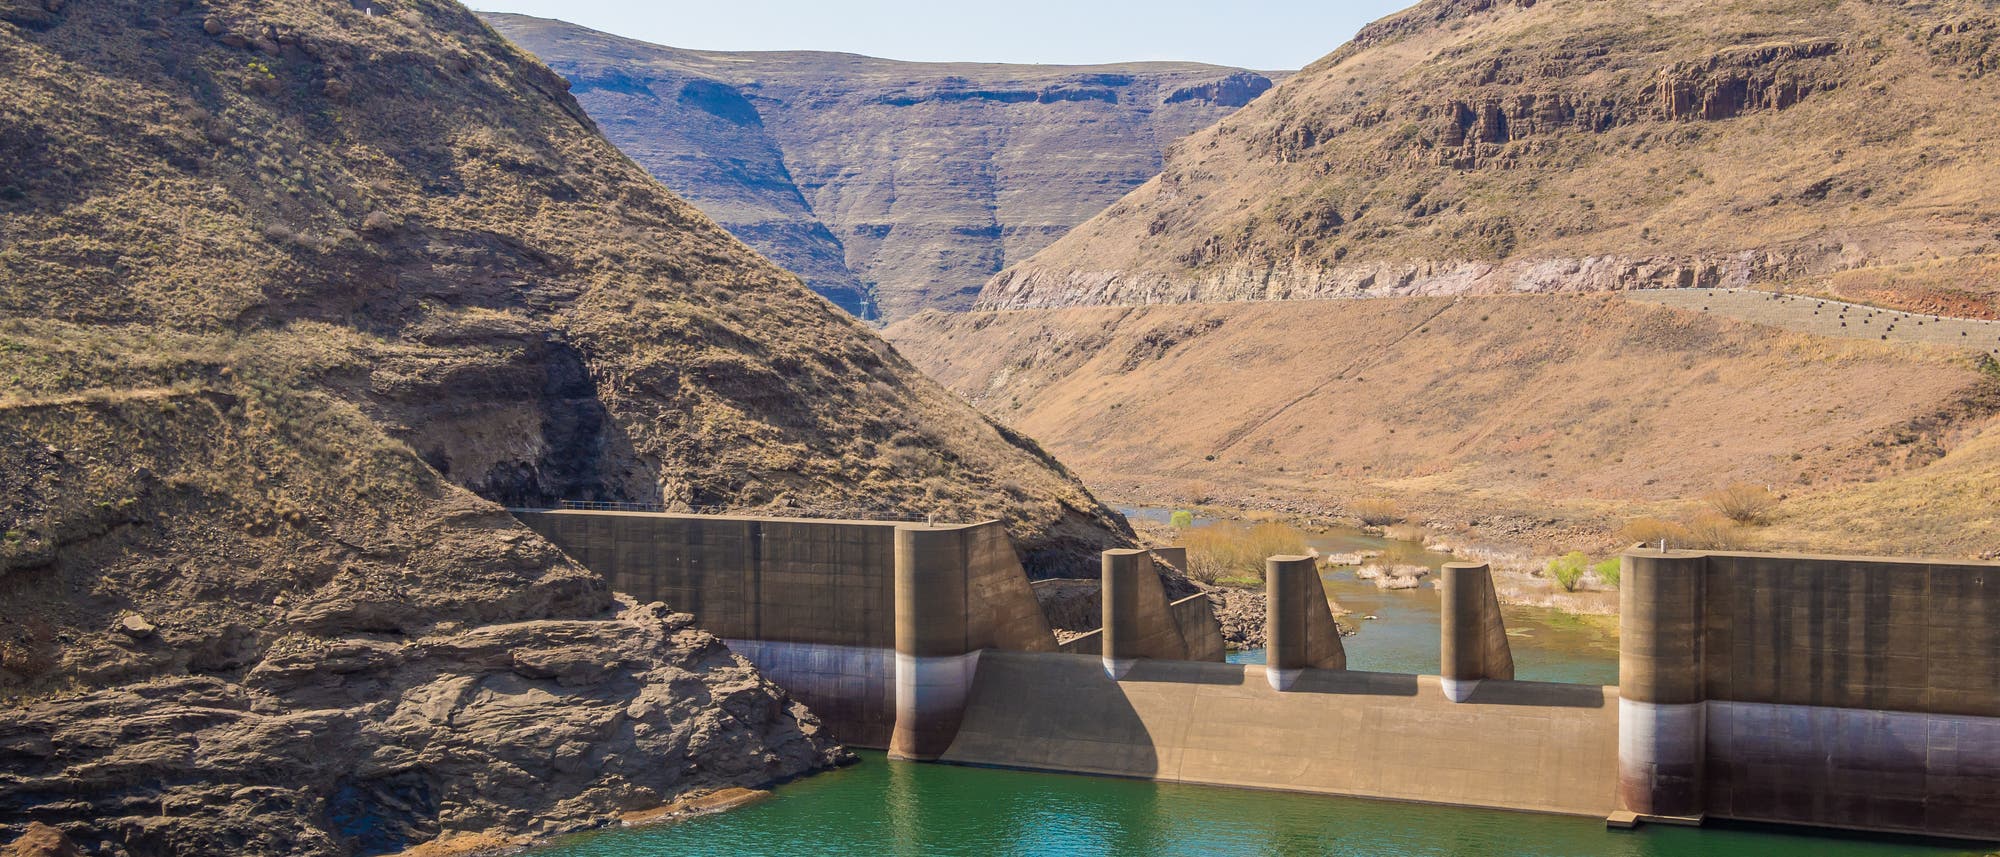 Ansicht des Wasserkraftwerks in Lesotho zwischen kargen Bergen, das Wasser ist grün-blau.